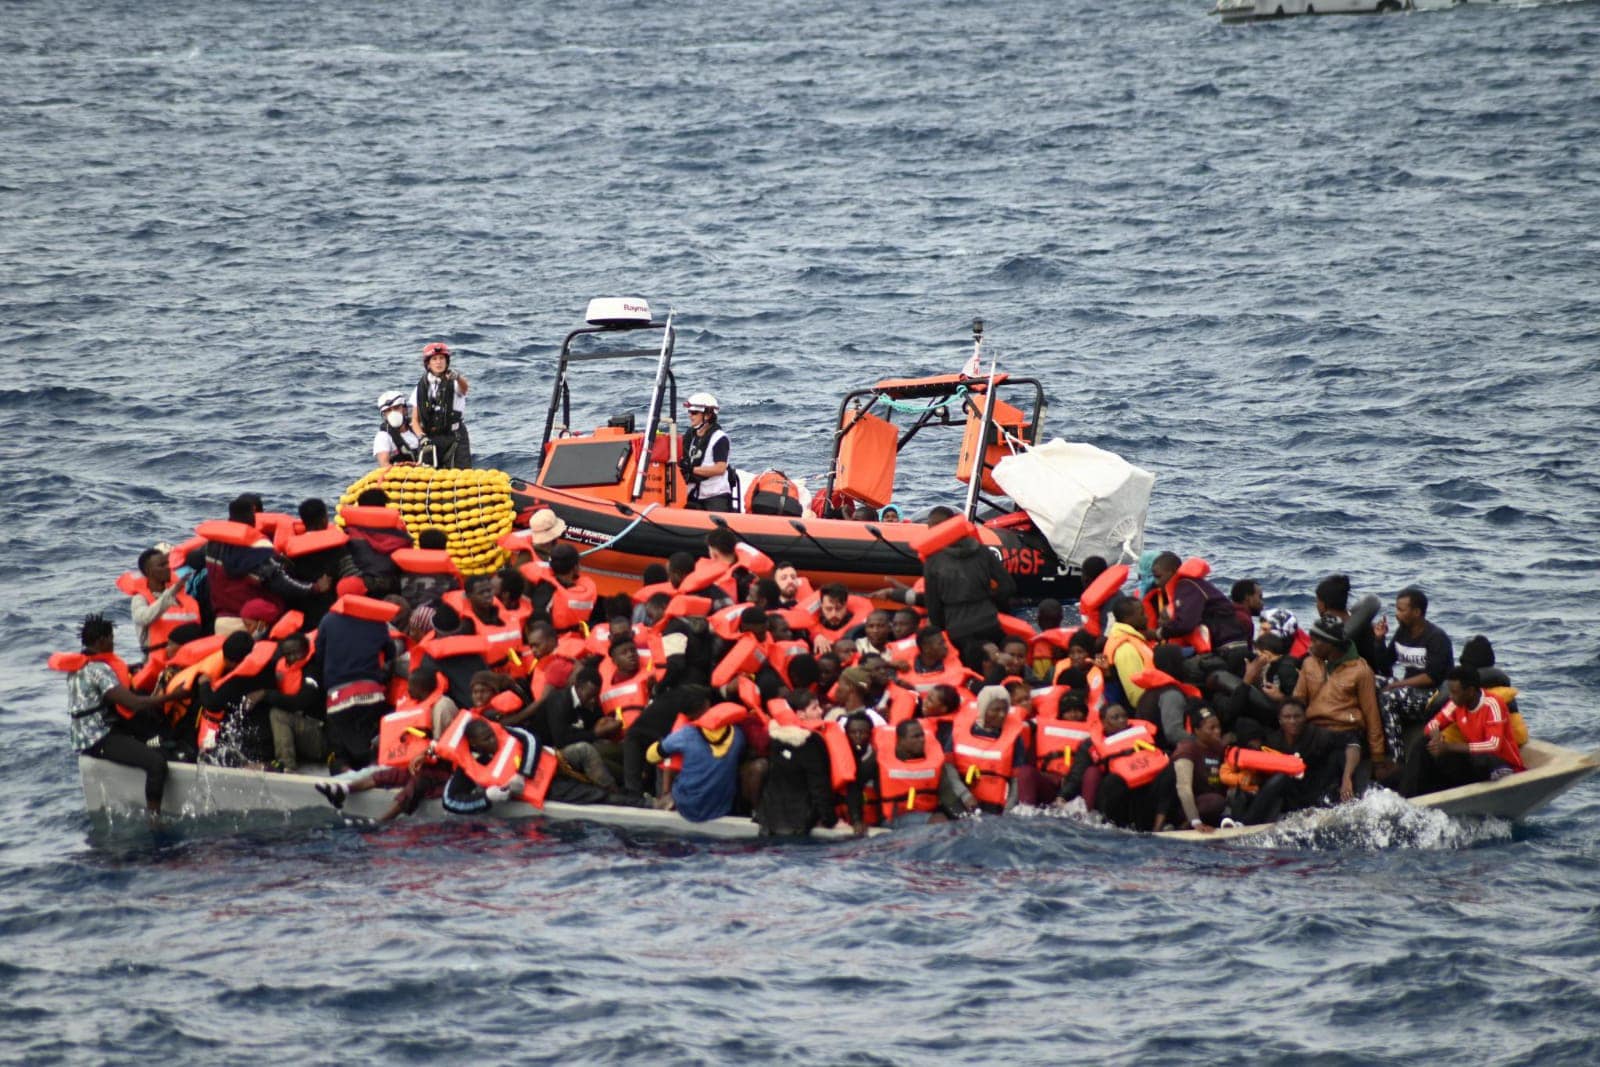 Πολύνεκρο ναυάγιο στην κεντρική Μεσόγειο - Απειλές θανάτου σε διασώστες